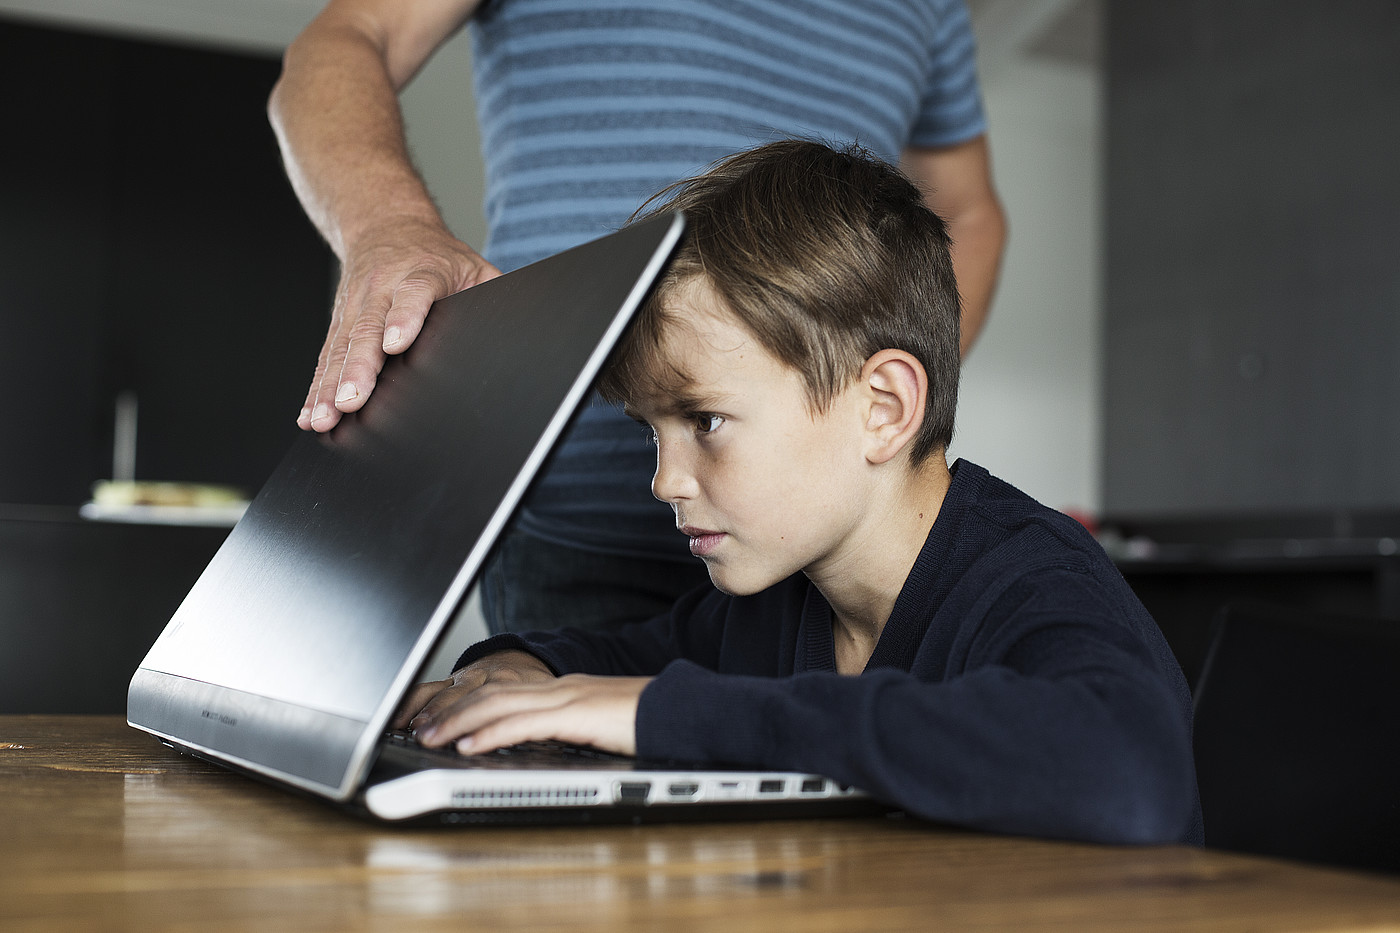 Un ragazzo è concentrato sullo schermo e non può consegnare il portatile.